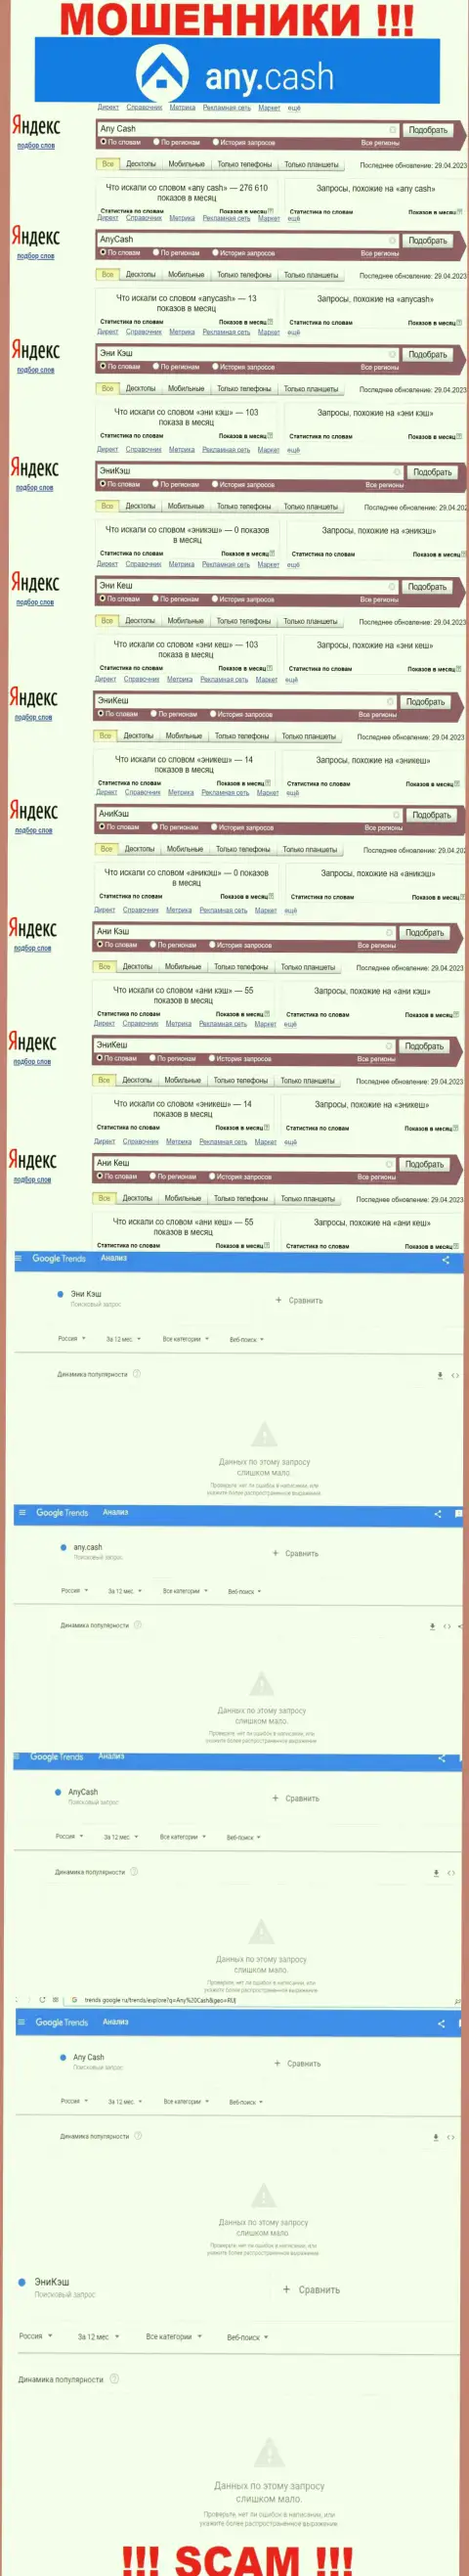 Скрин результата поисковых запросов по противозаконно действующей организации AnyCash